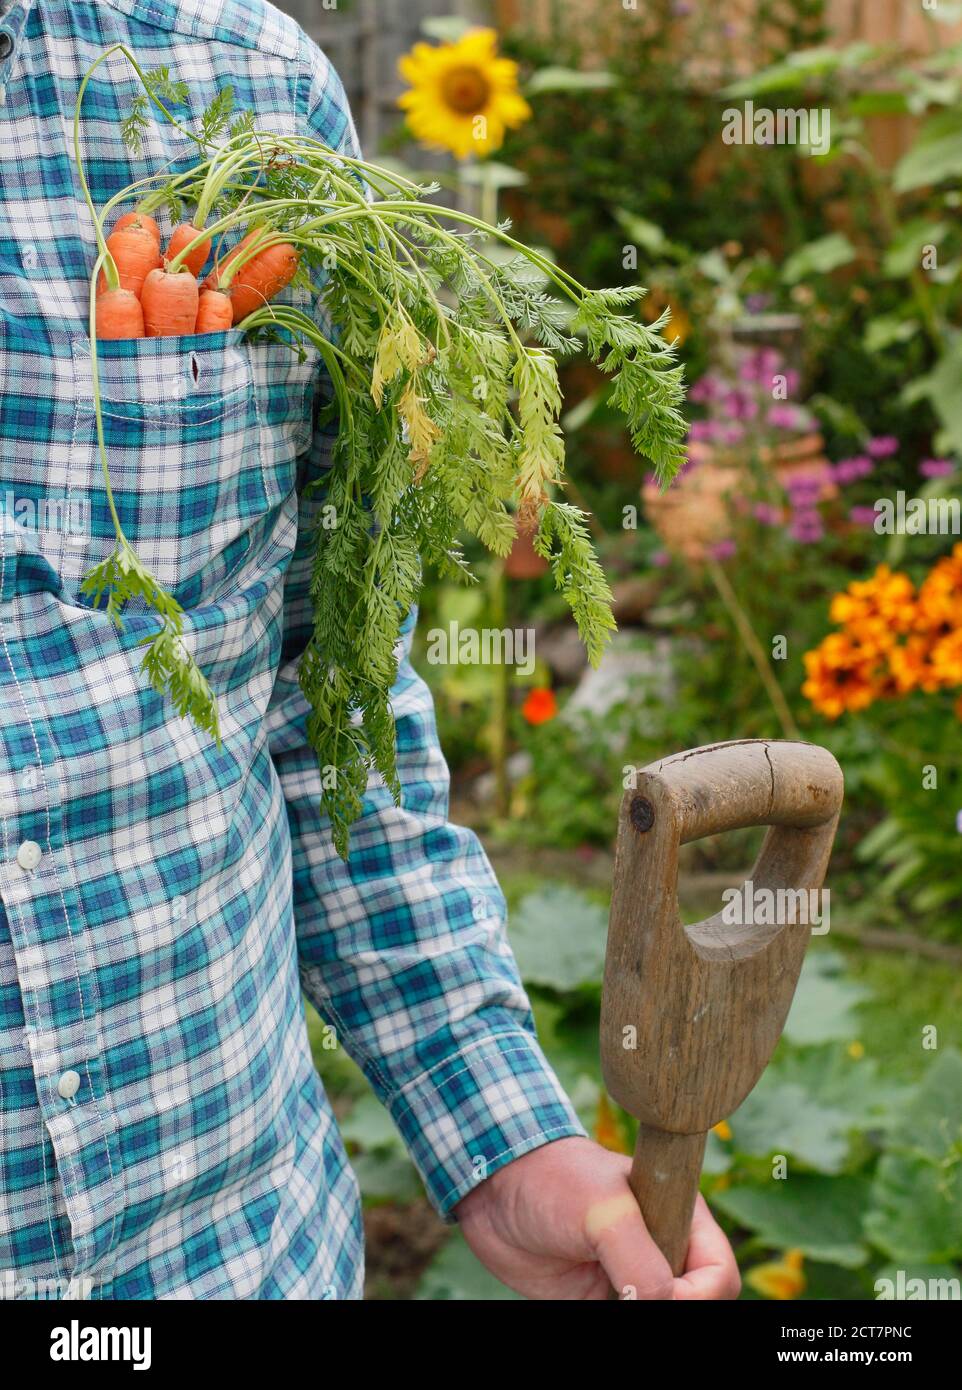 Giardiniere che raccoglie carote coltivate in casa in un terreno vegetale giardino posteriore con bordi floreali durante la pandemia di Coronavirus. REGNO UNITO Foto Stock